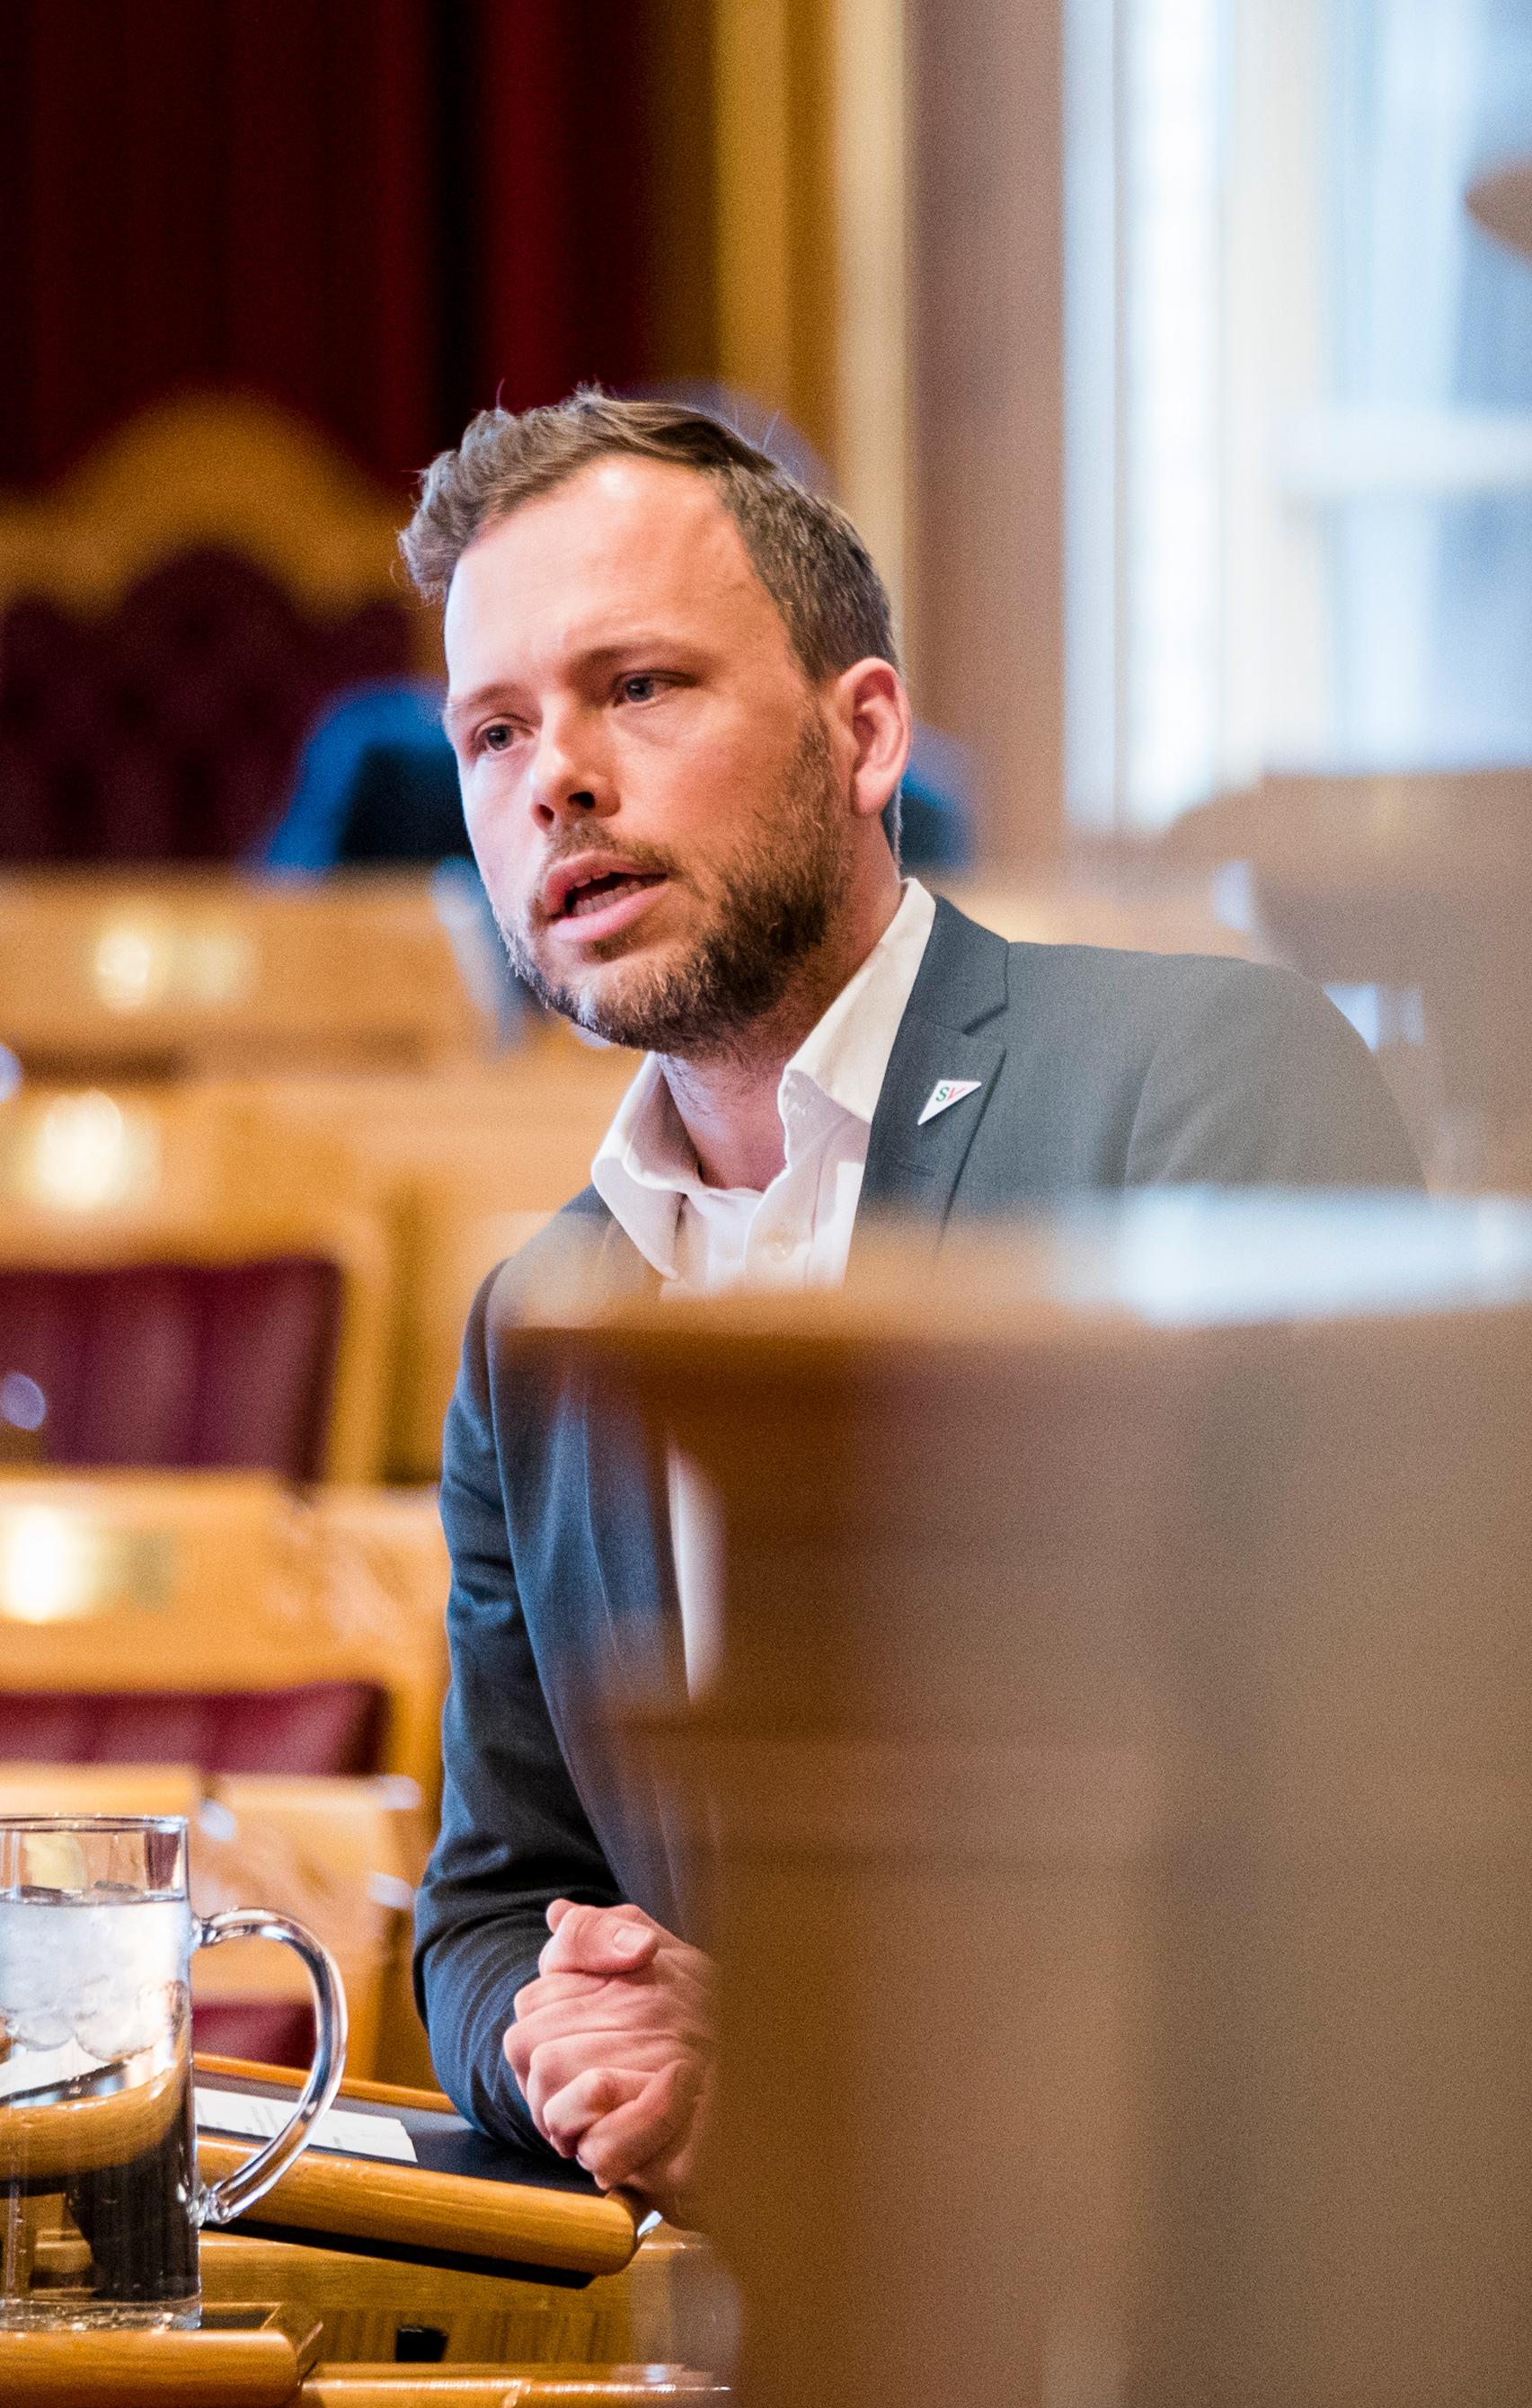 SV-leder Audun Lysbakken mener regjeringen må ta en grundigere vurdering av Ulvsnesøy.